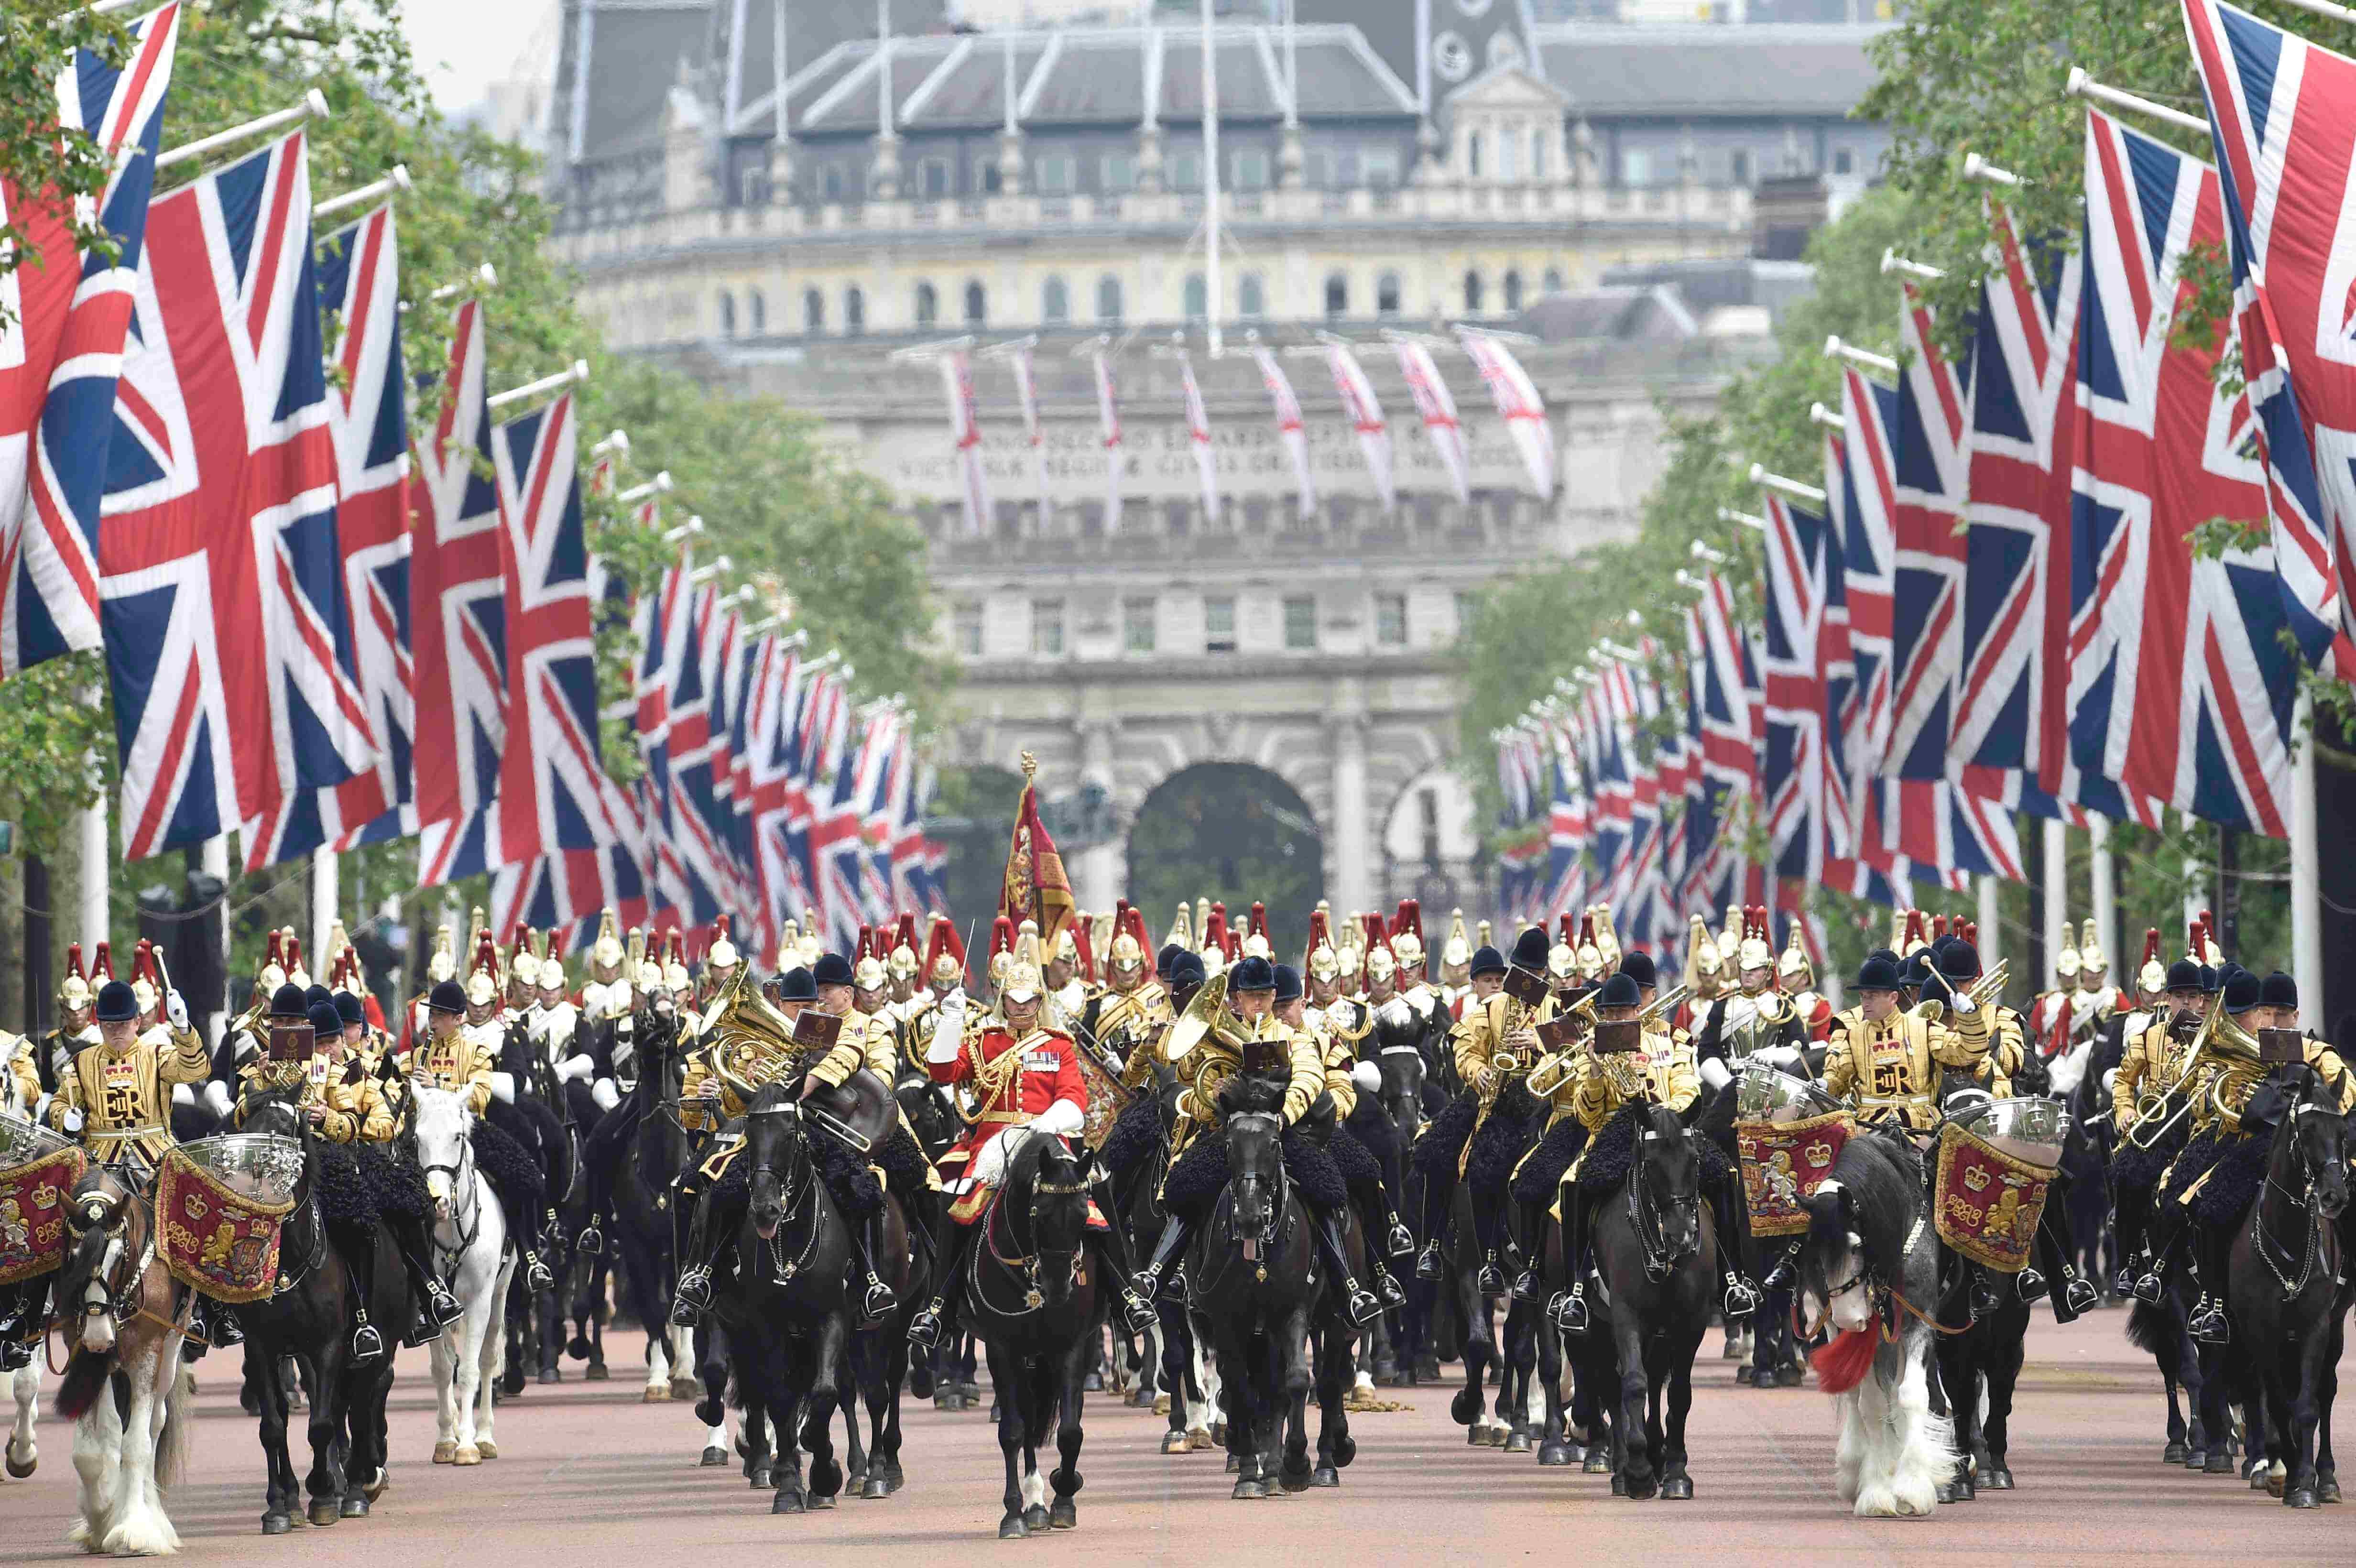 2012 год в великобритании. Парад конной гвардии в Лондоне. Плац-парад королевской конной гвардии. Парад ВВС Trooping the Colour. The Trooping of the Colour в Великобритании.